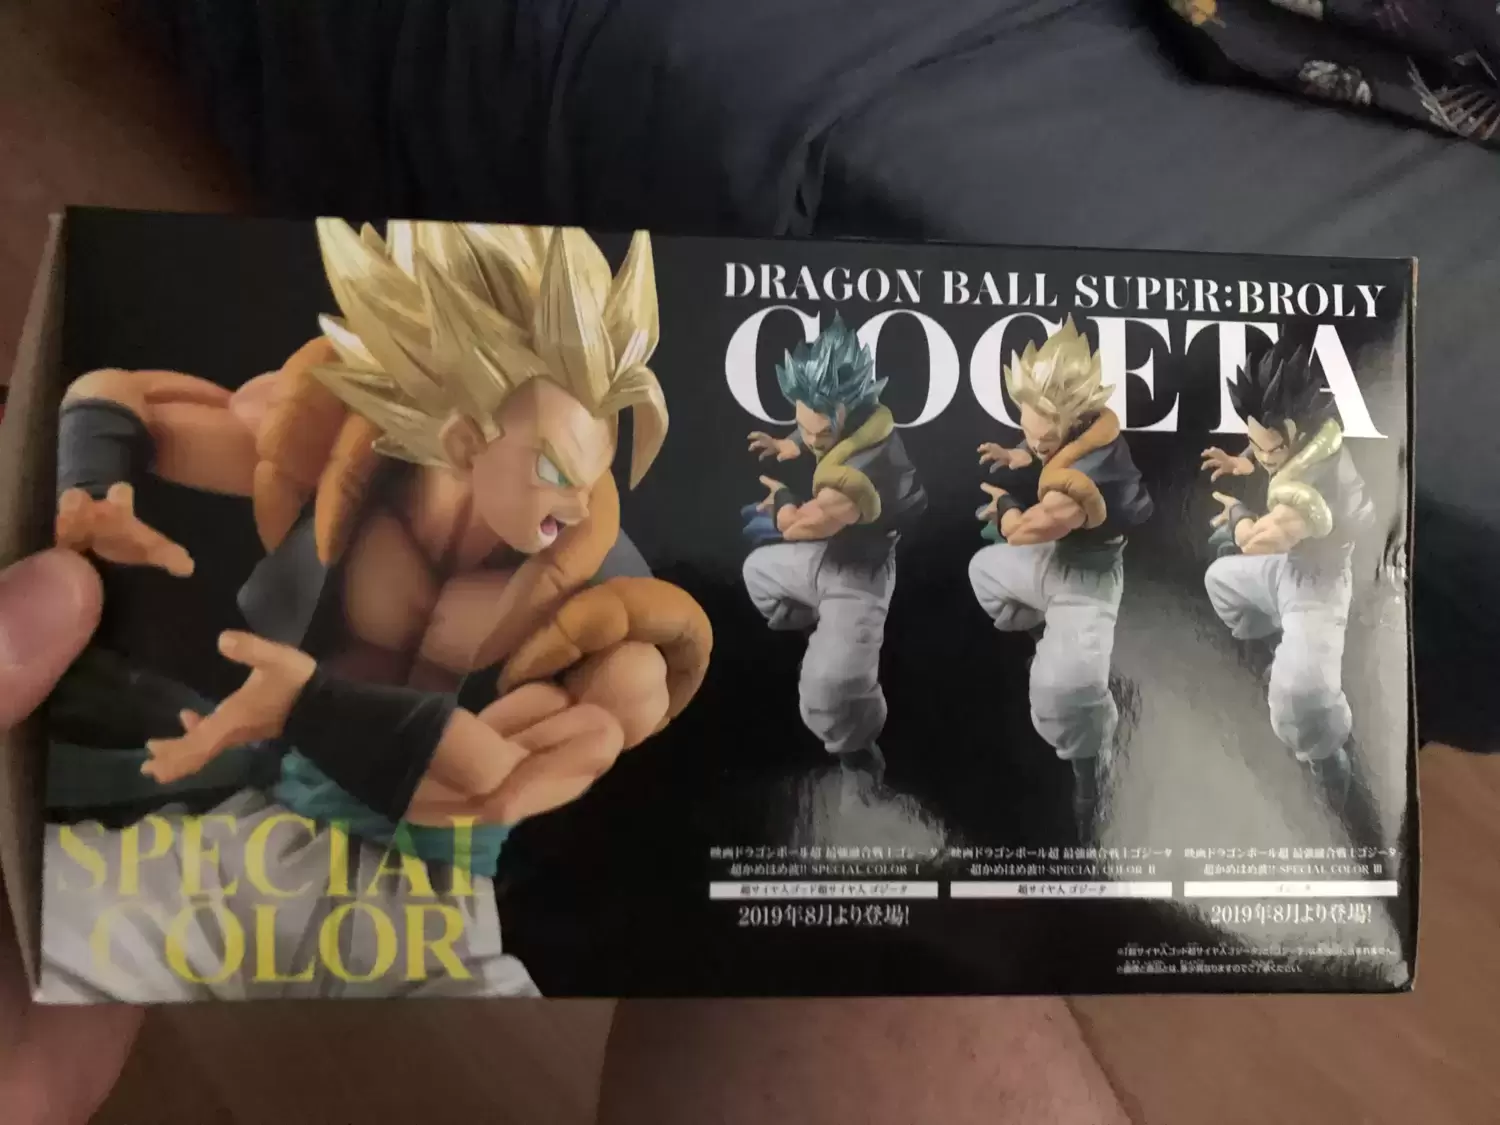 Dragon Ball Bandai - Gogeta special color - Super saiyan Gogeta